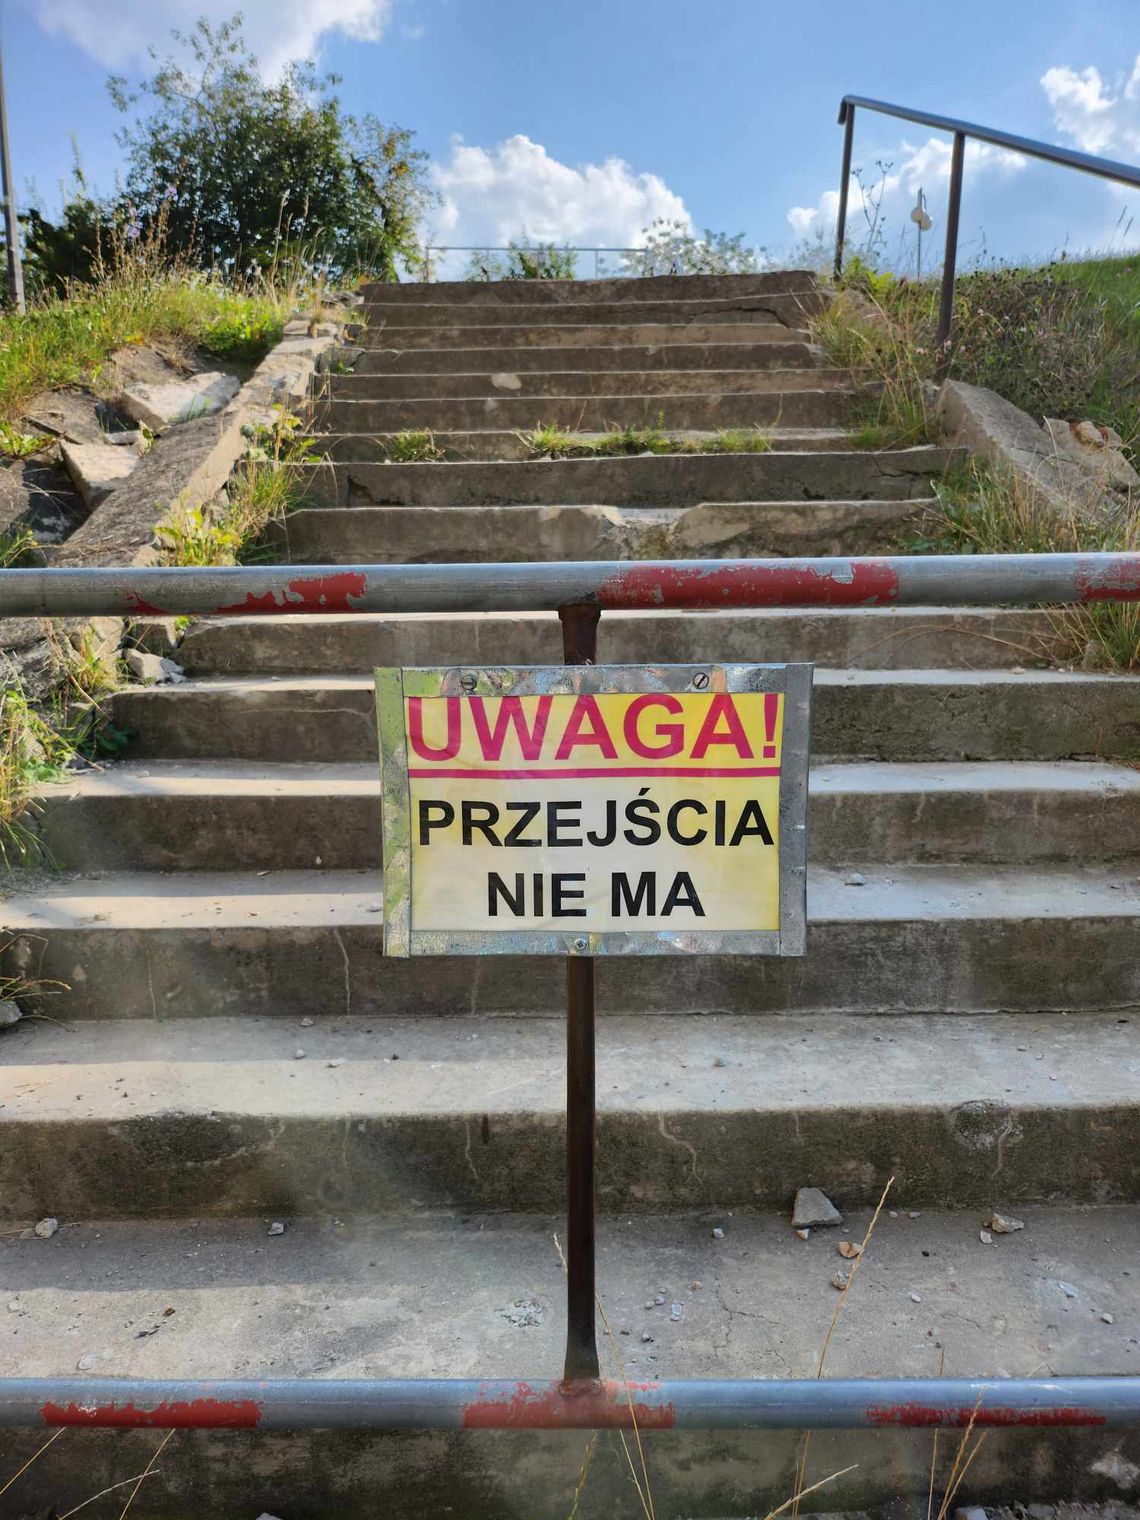 schody mocno zniszczone przy chełmskim gmachu i tabliczka z napisem "uwaga, przejścia nie ma"